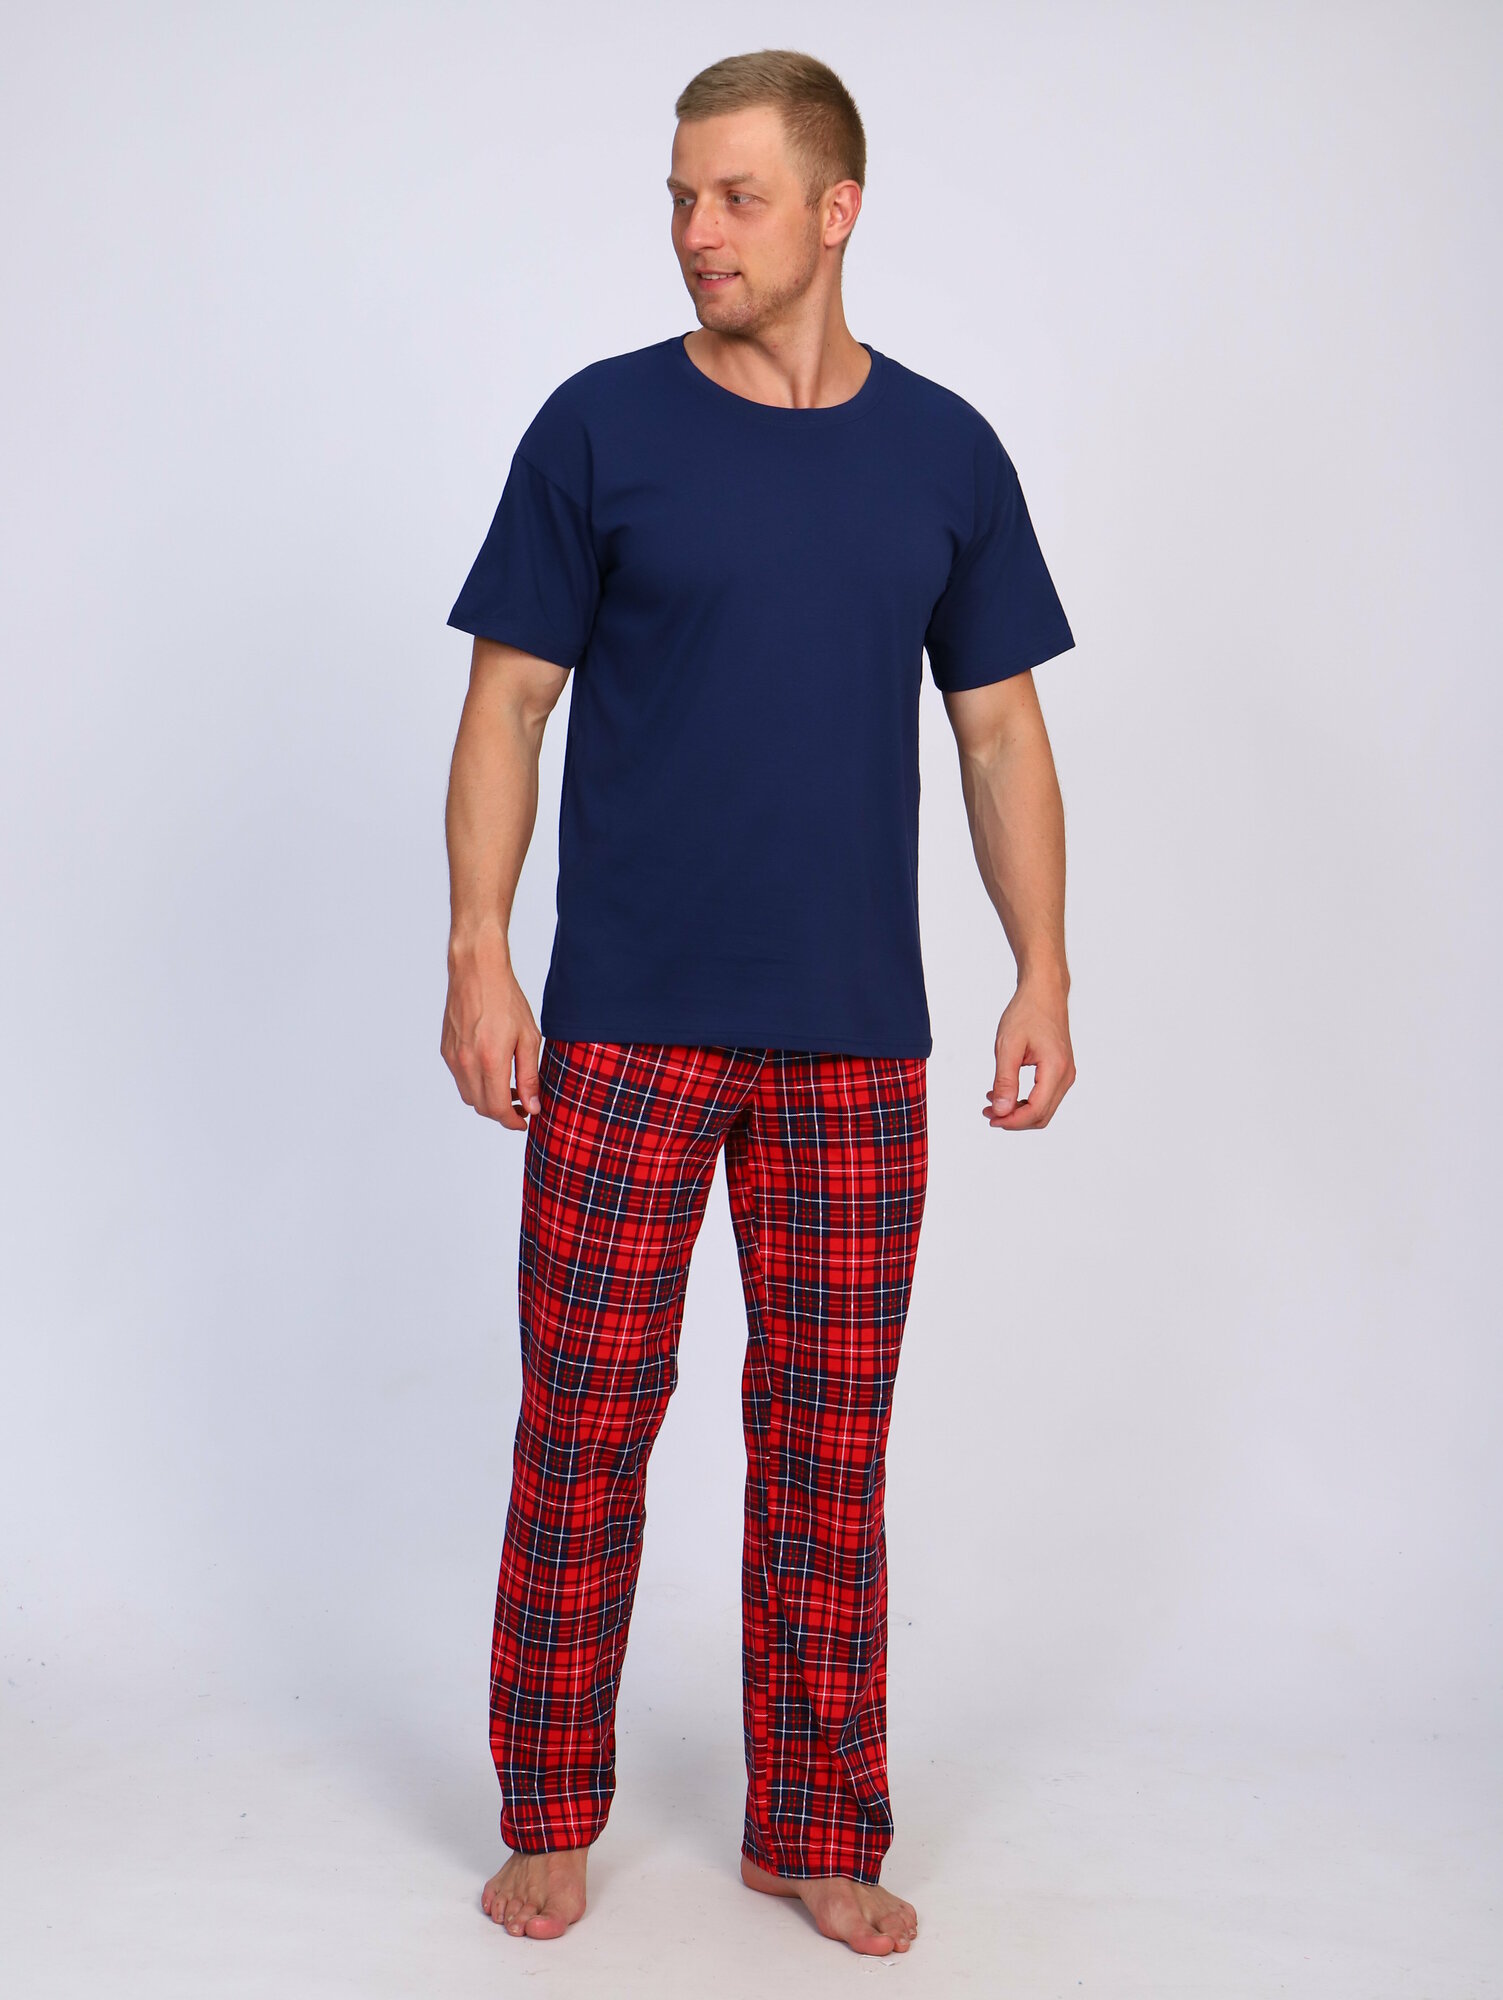 Мужская пижама Рутатекс - брюки 44-46 и футболка - фотография № 1